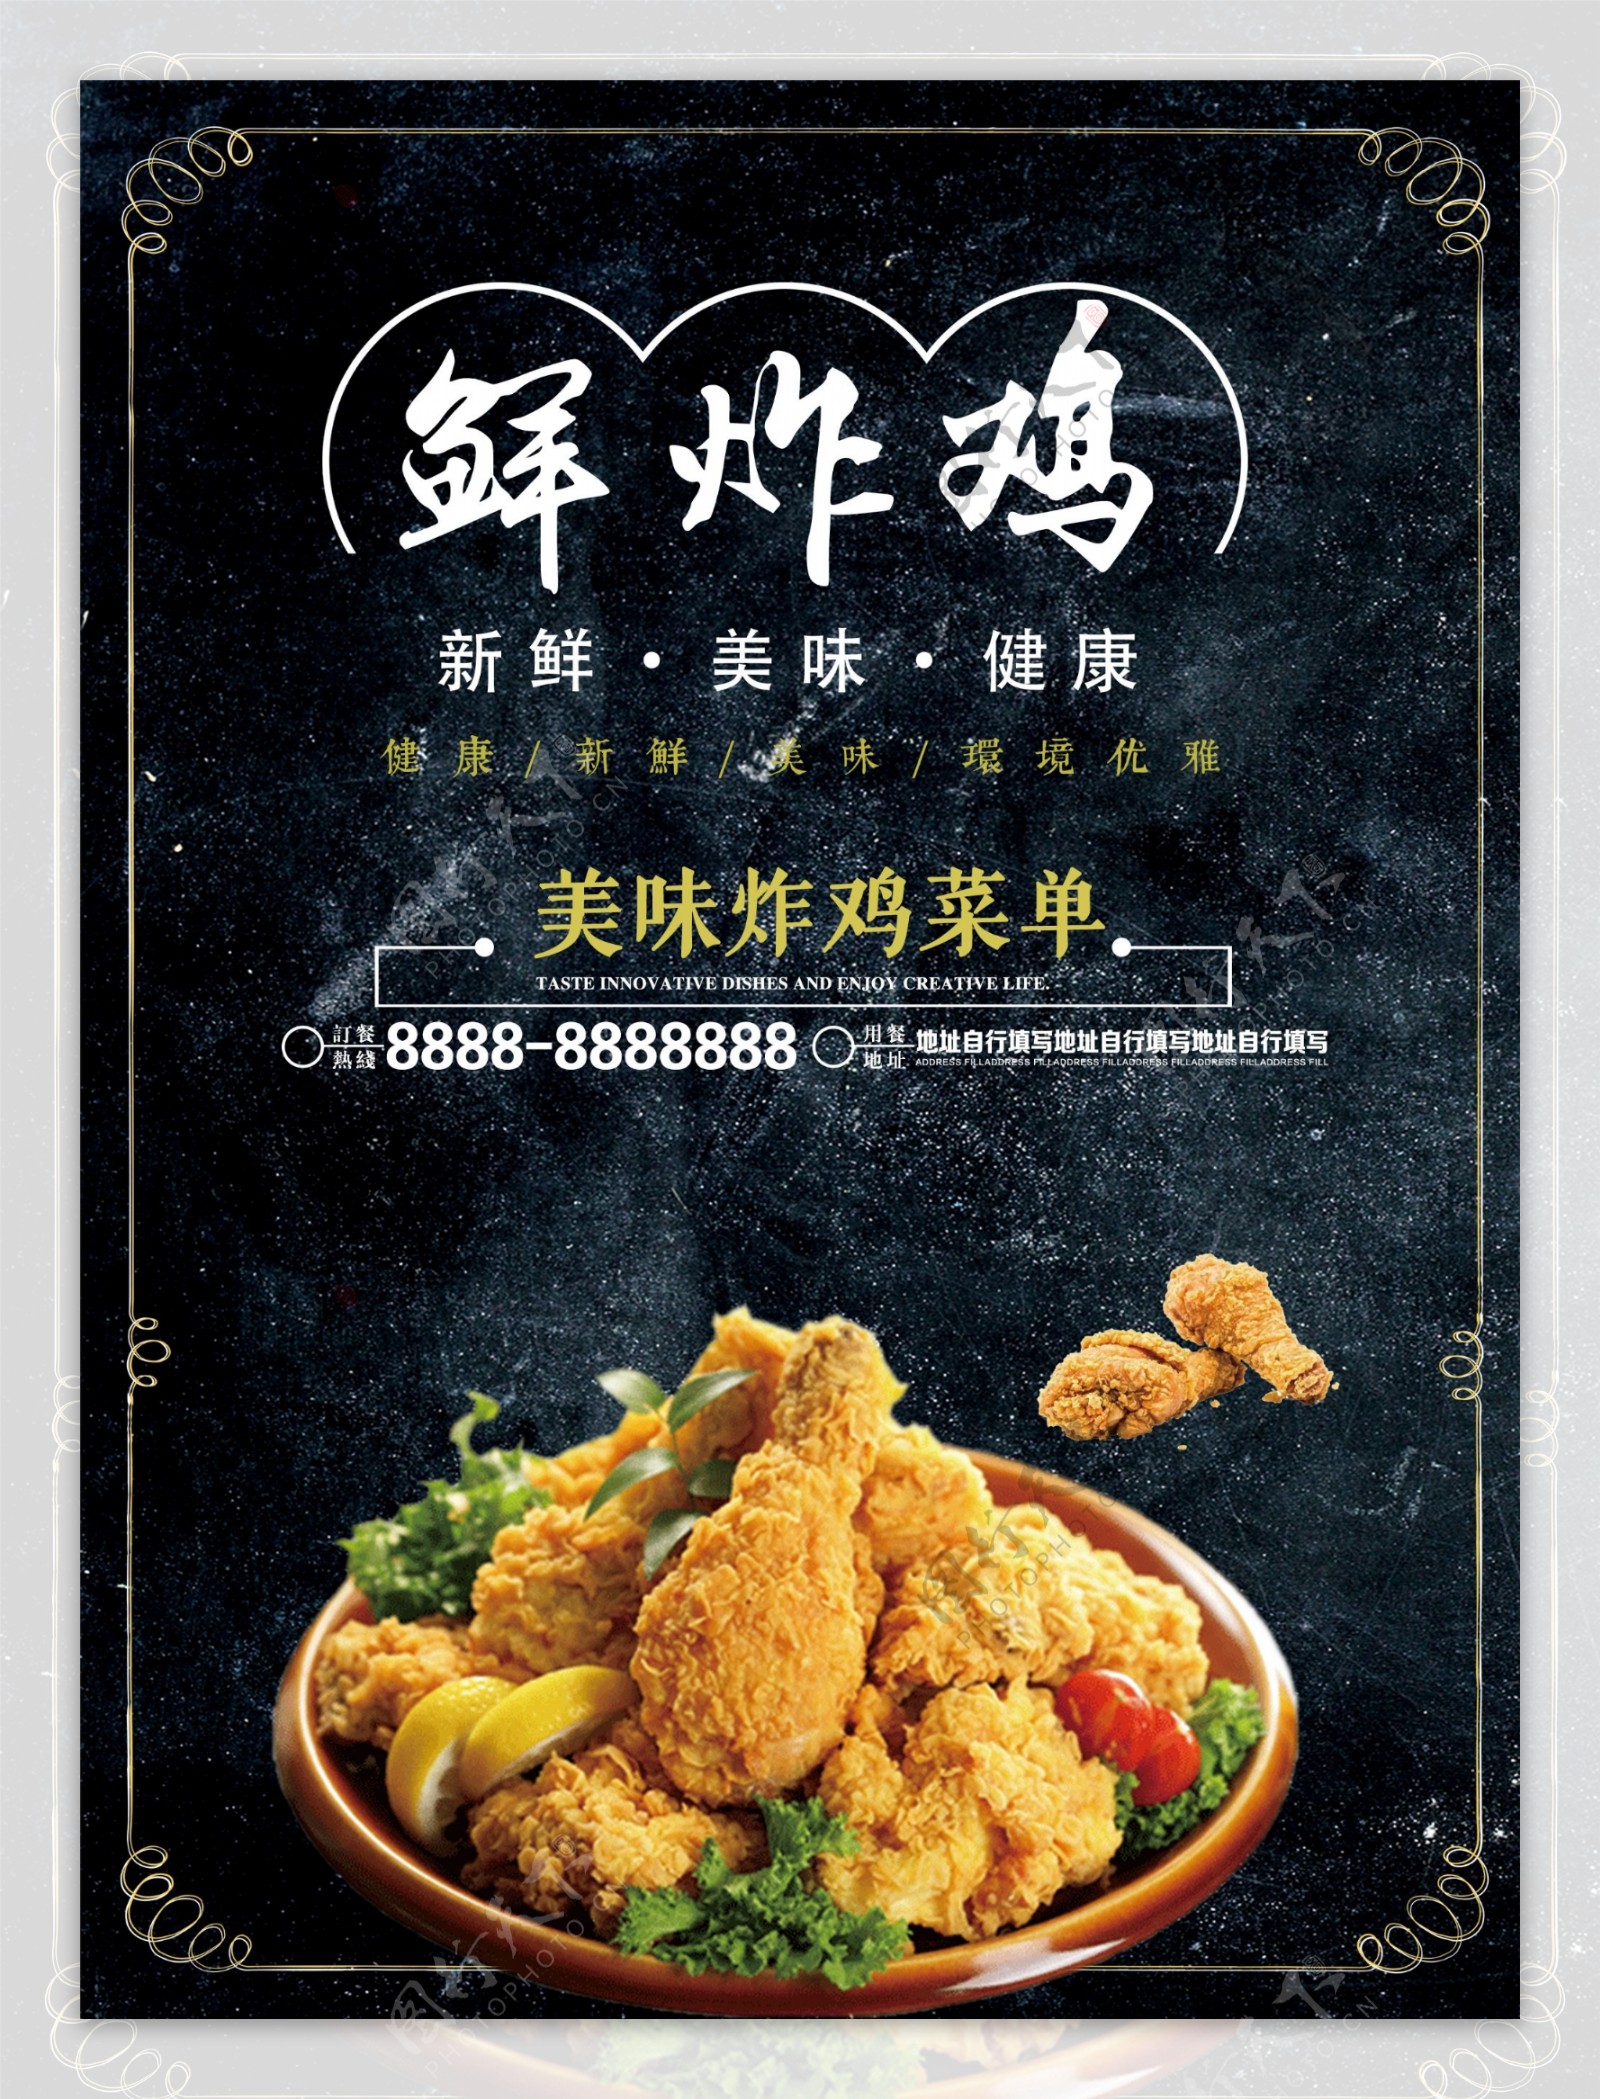 炸鸡宣传菜单设计素材图片